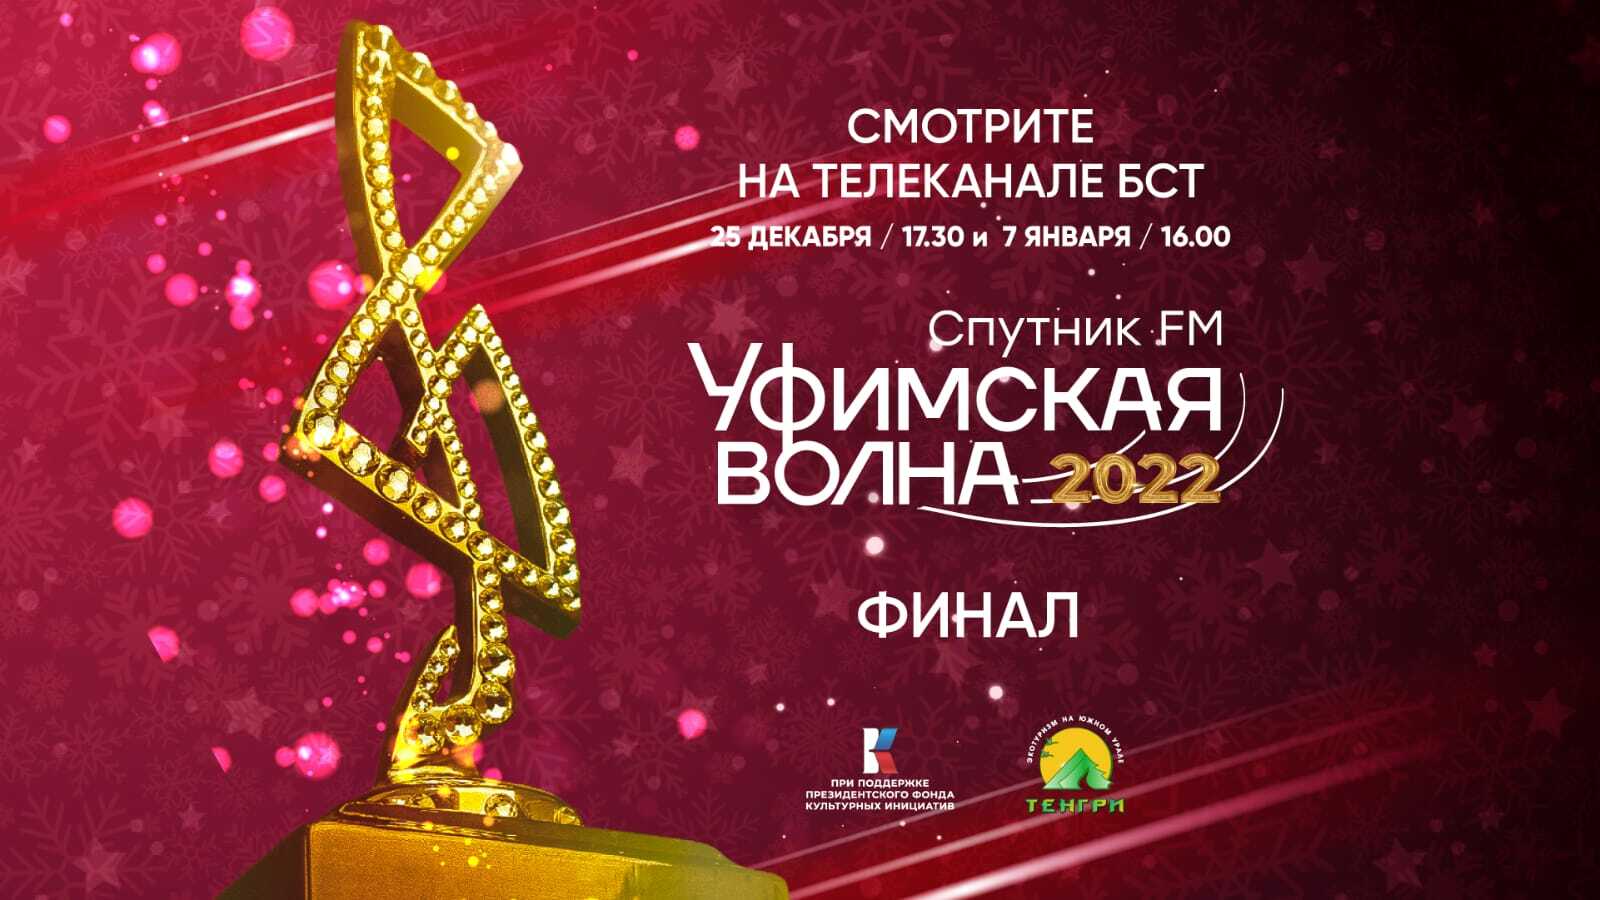 Финал музыкального конкурса «Уфимская Волна 2022» смотрите на БСТ